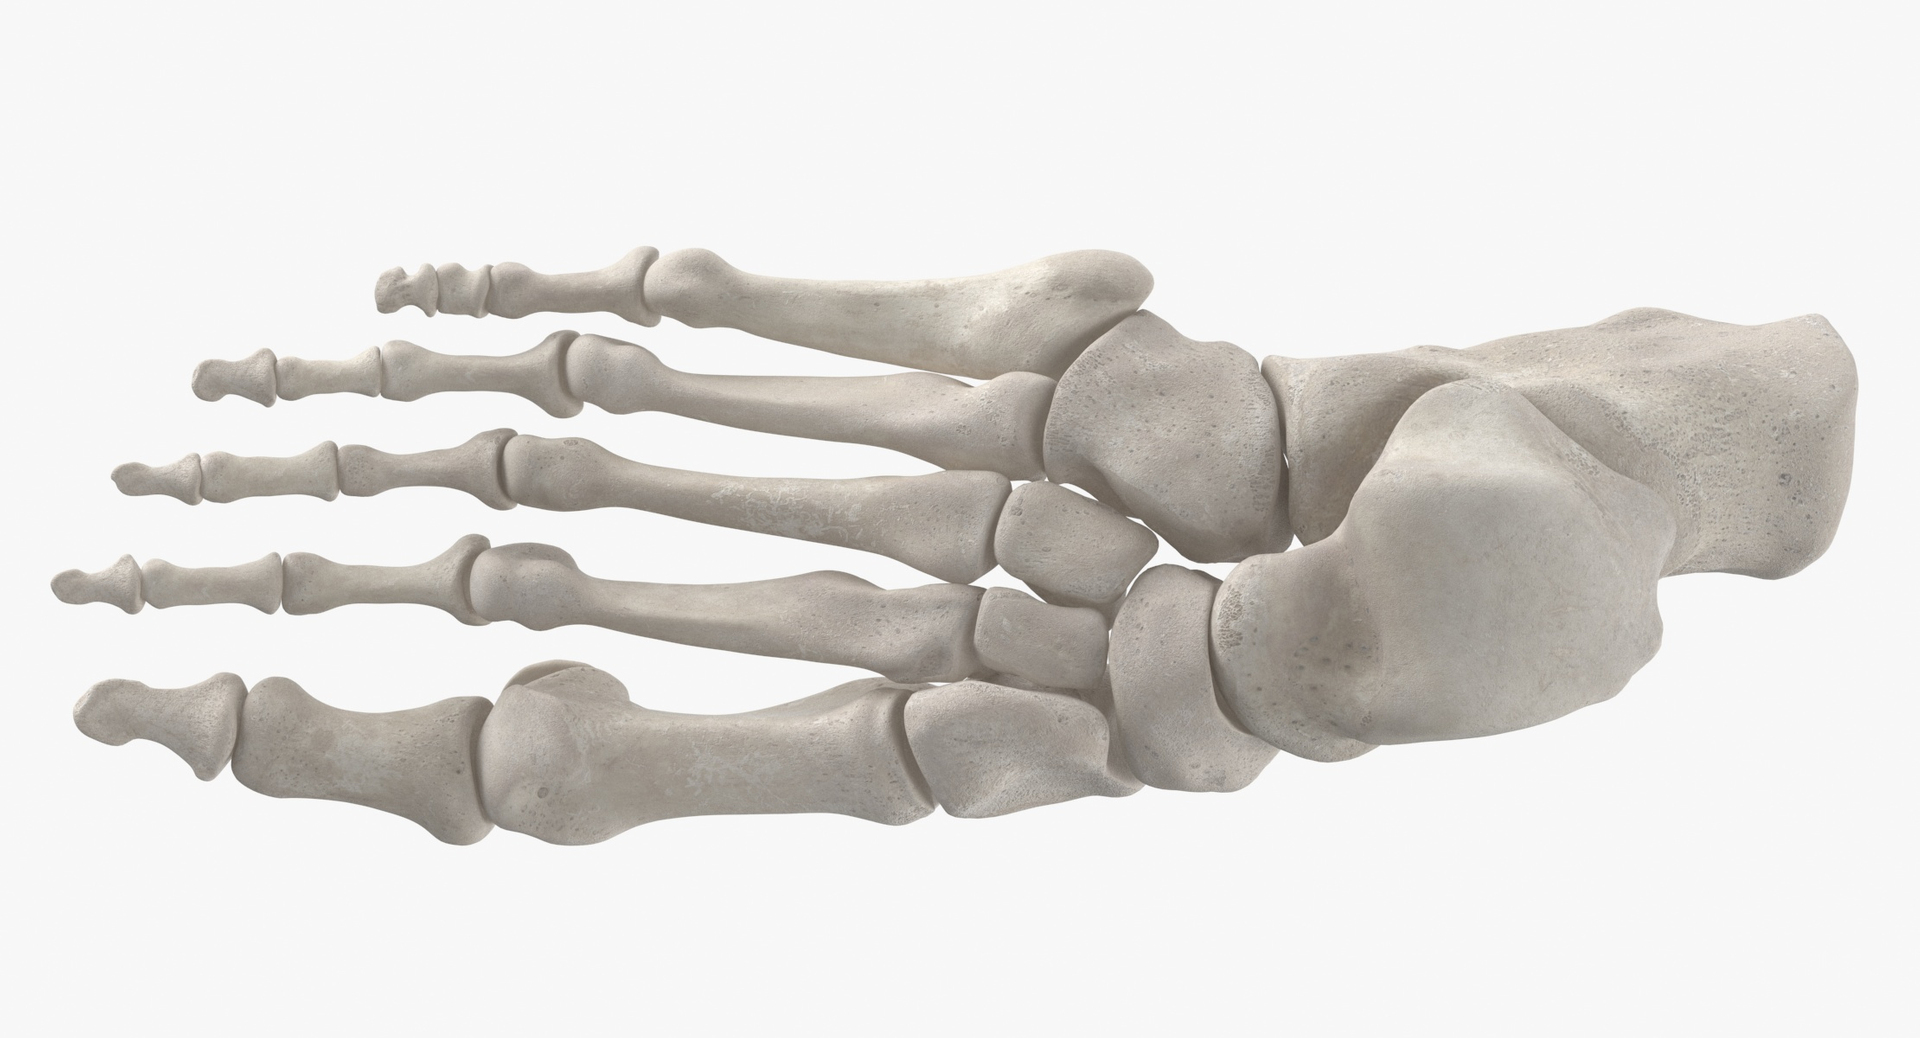 Human Foot Bones Anatomy Model - TurboSquid 1538252